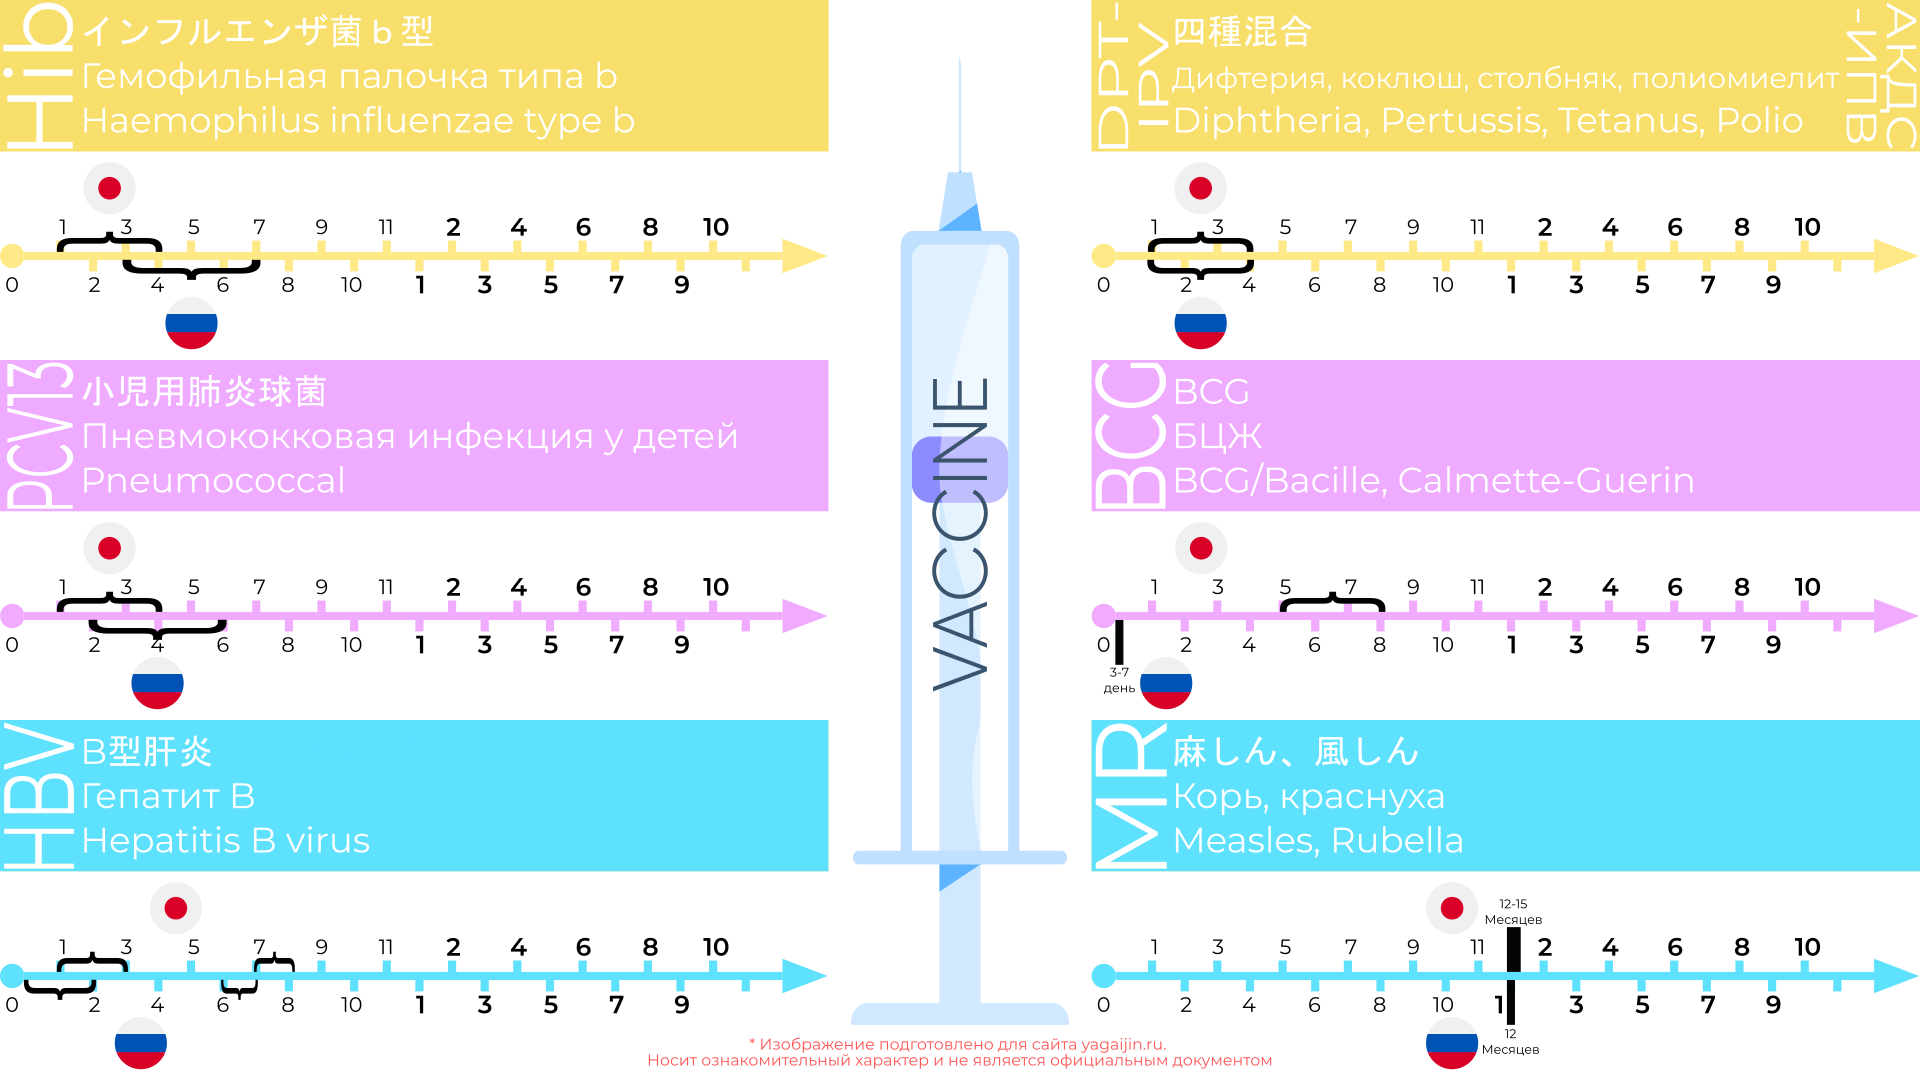 Сравнение схем вакцинаций в Японии и России